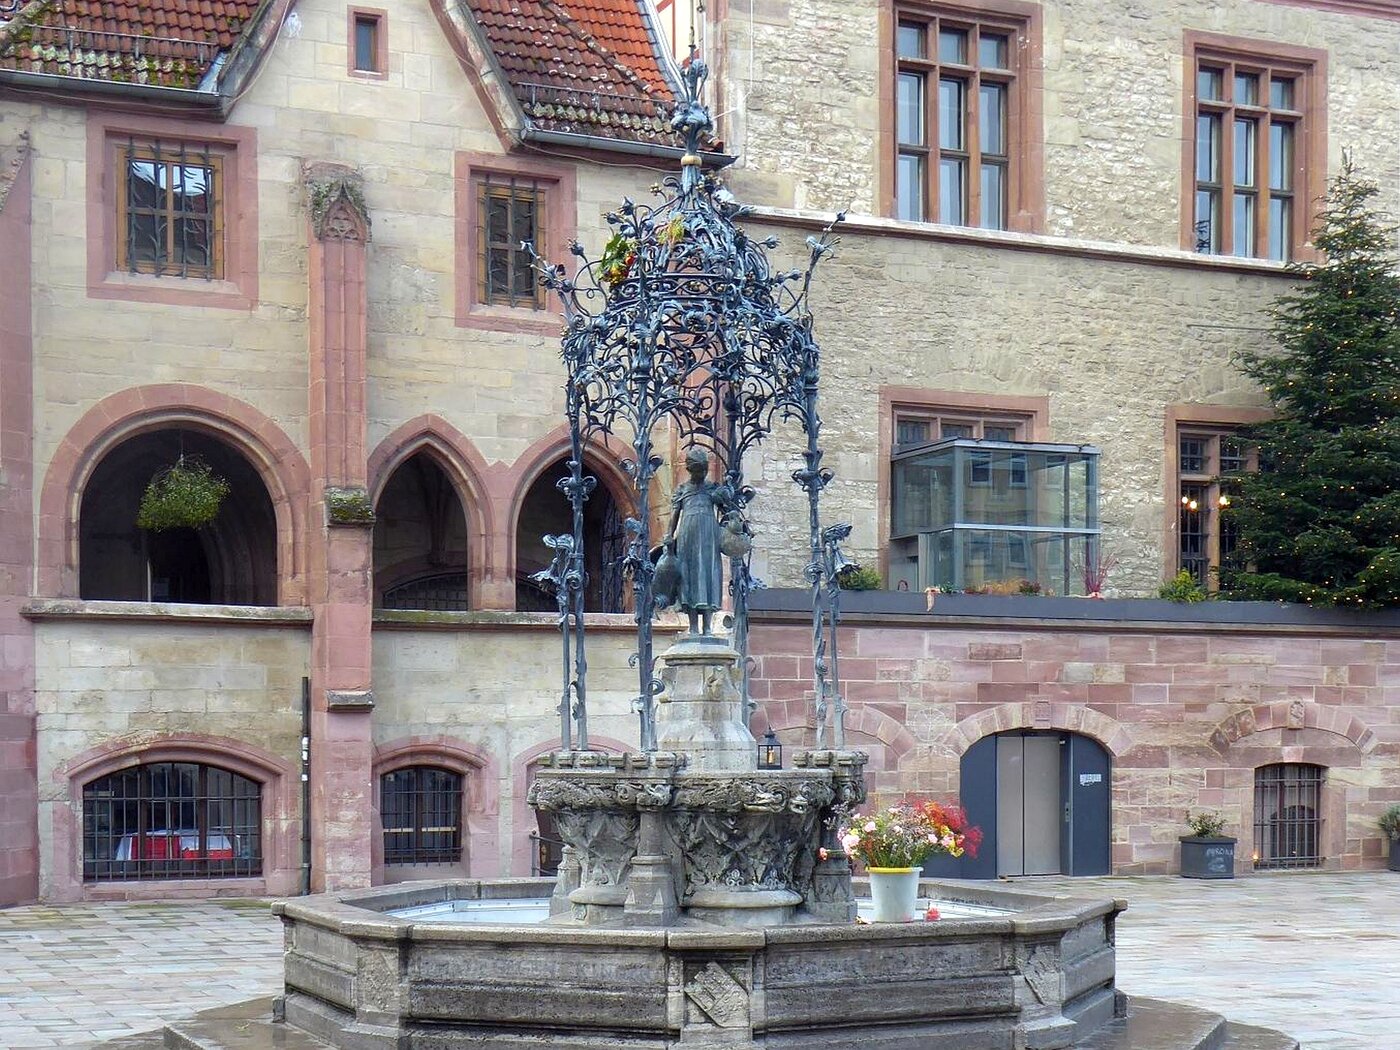 Gänselieselbrunnen in Göttingen (Markt), Blick von Osten, im Hintergrund das Alte Rathaus.